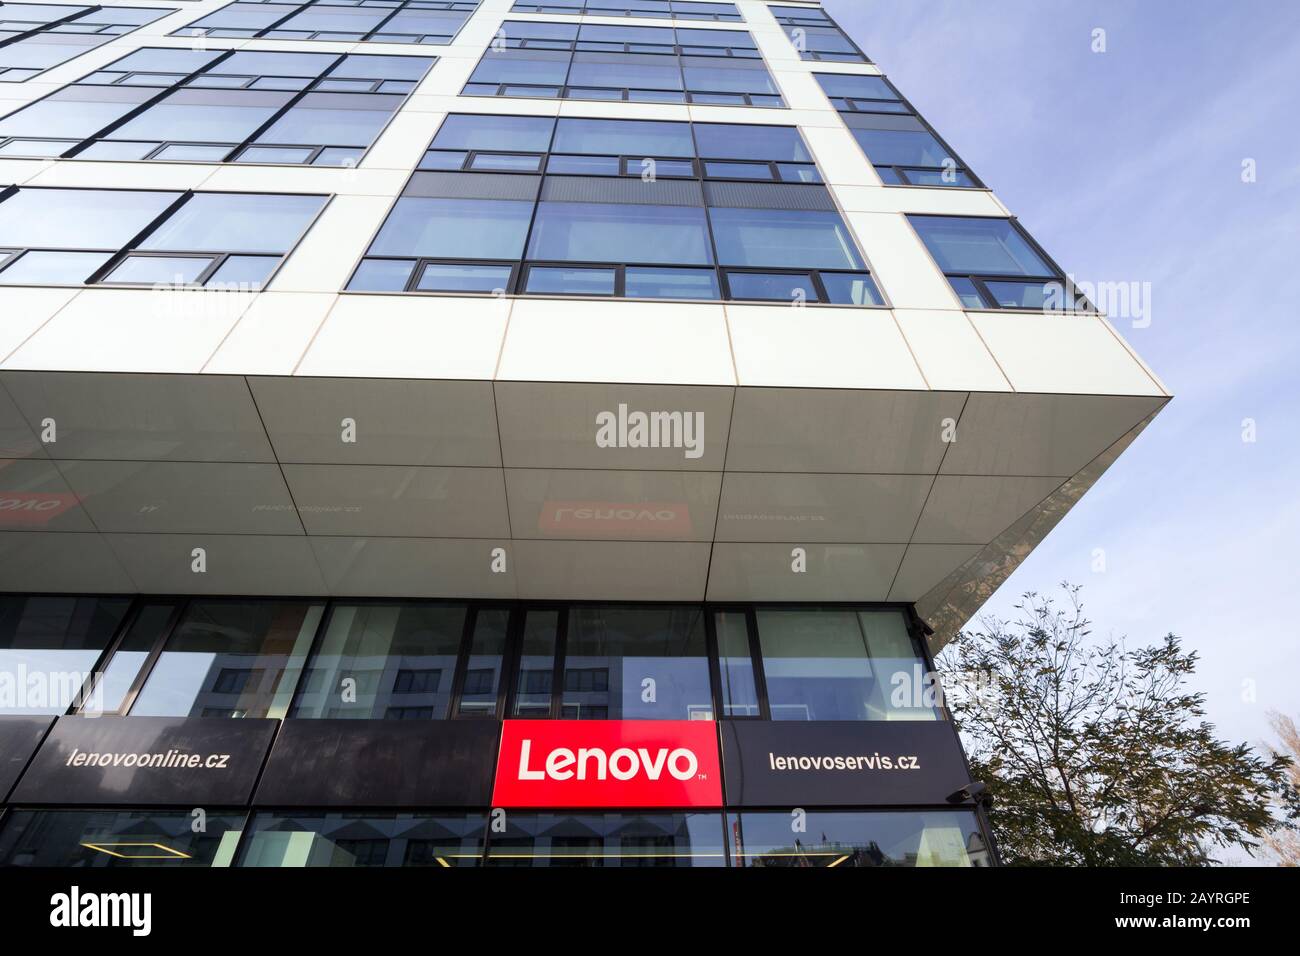 Prague, TCHÉQUIE - 1er NOVEMBRE 2019: Lenovo signe sur son magasin et son bureau principal pour Prague. Lenovo est une société chinoise de haute technologie spécialisée dans Banque D'Images